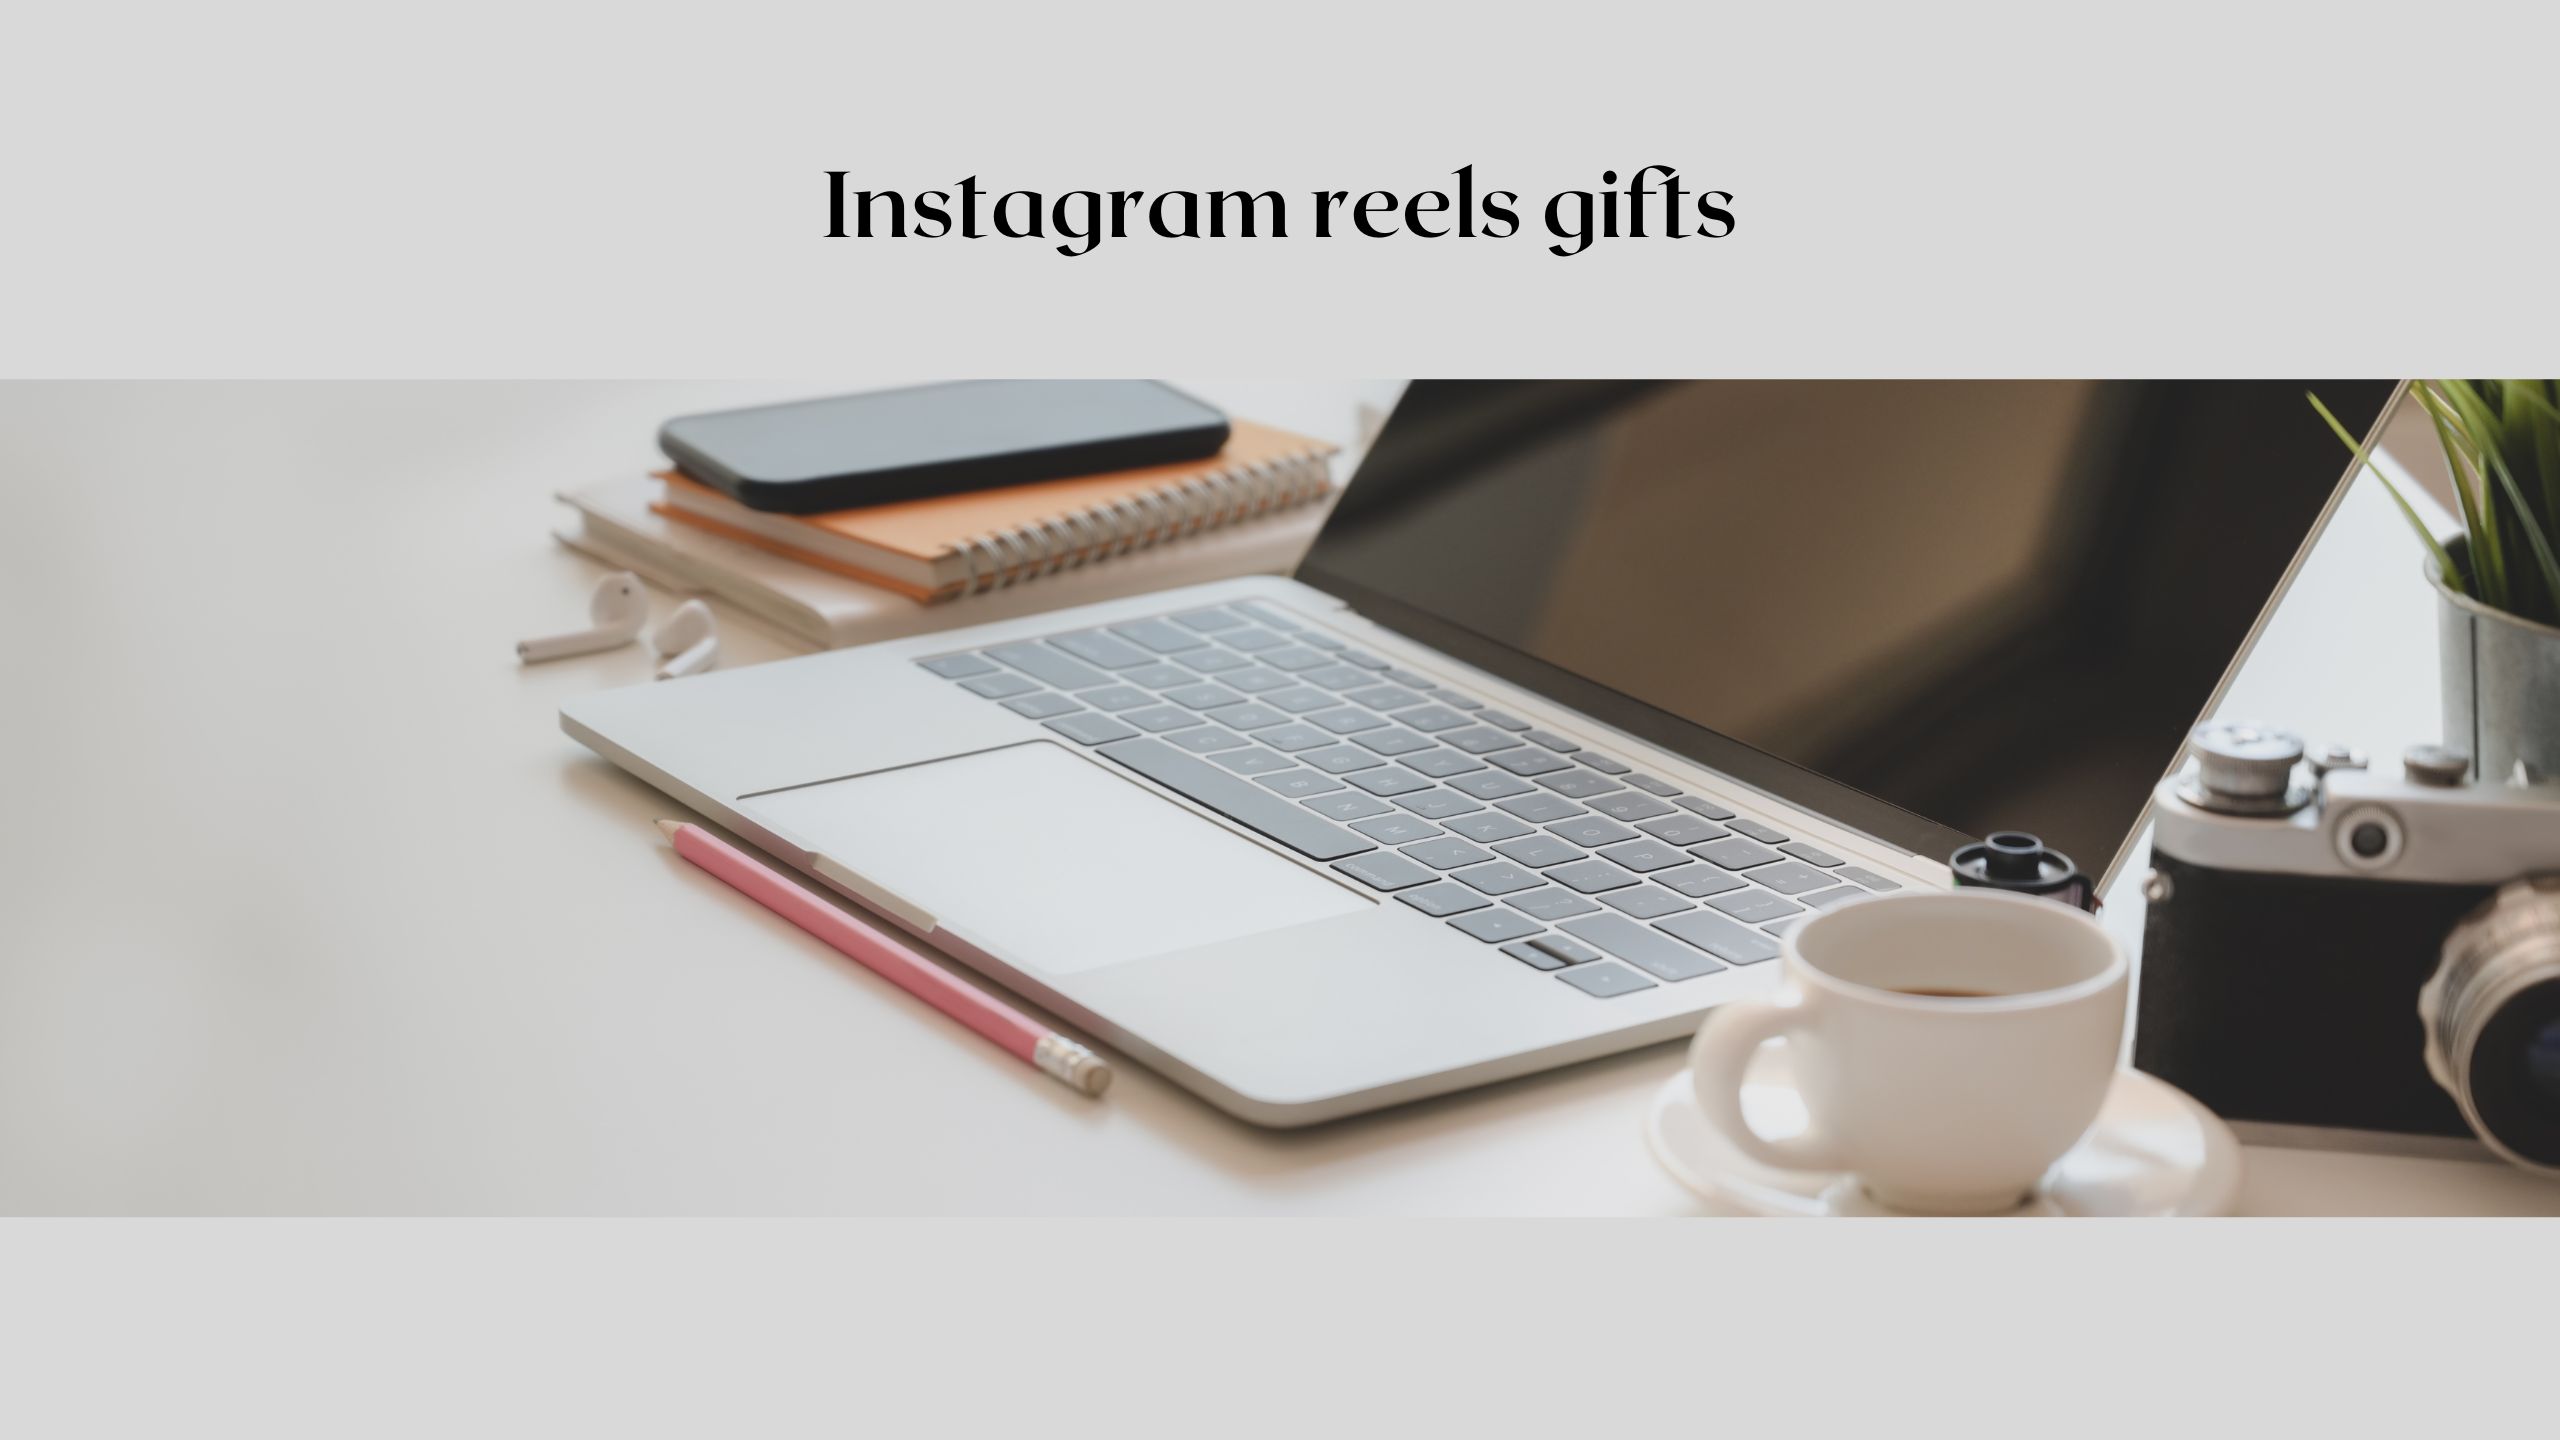 enable gifts on Instagram reels